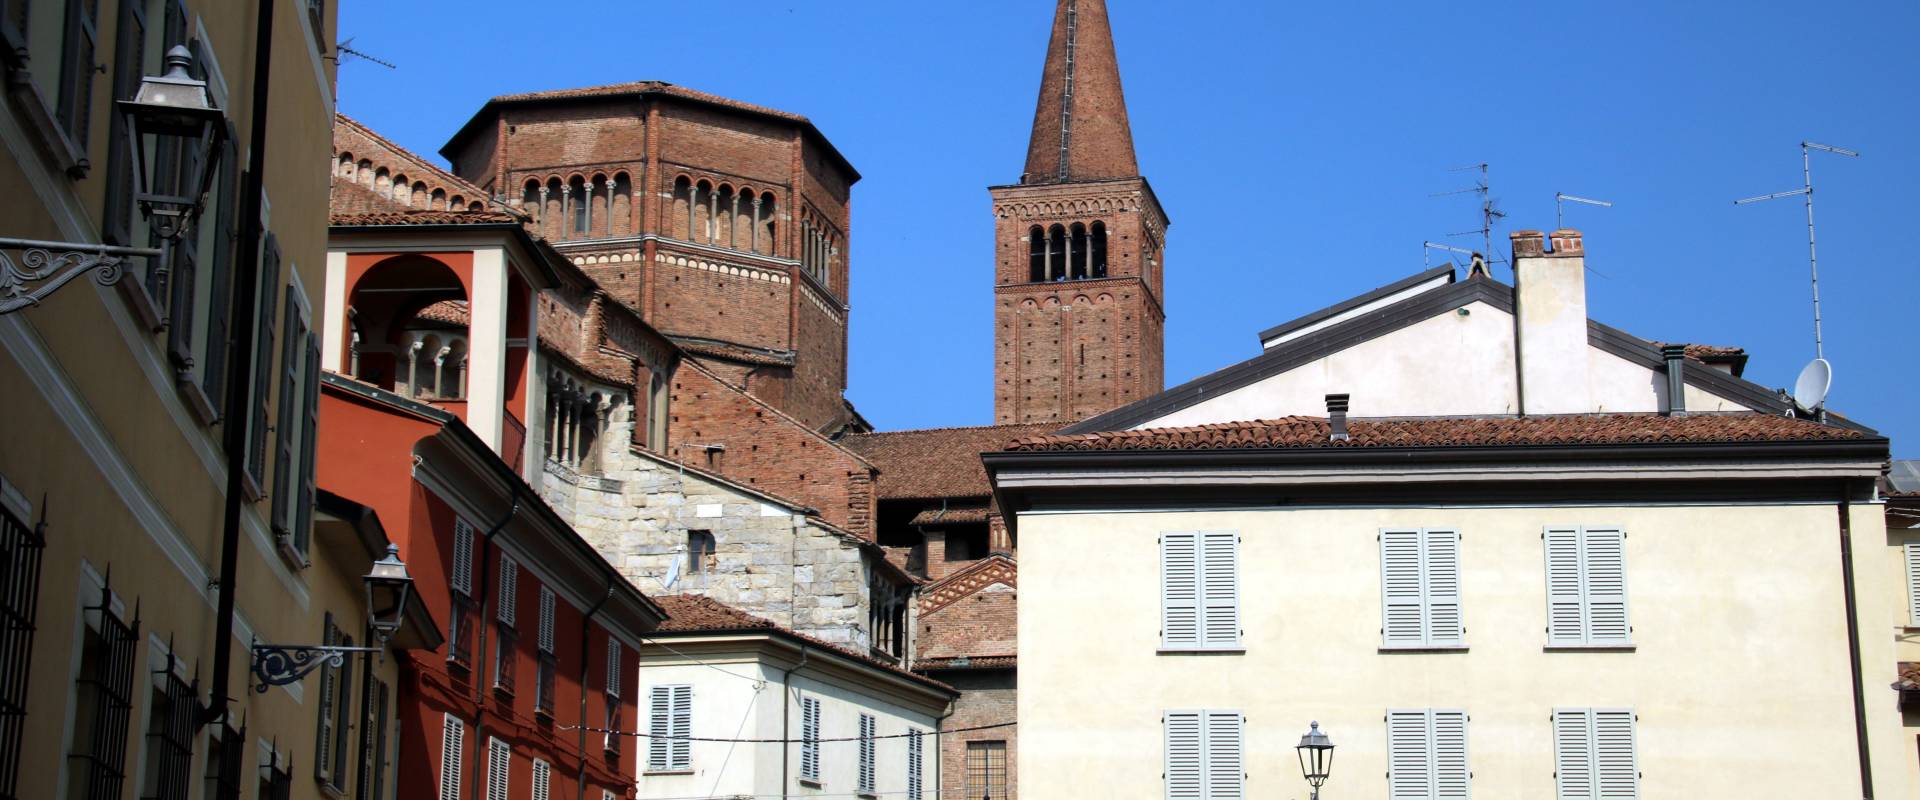 Duomo di Piacenza, esterno 11 foto di Mongolo1984